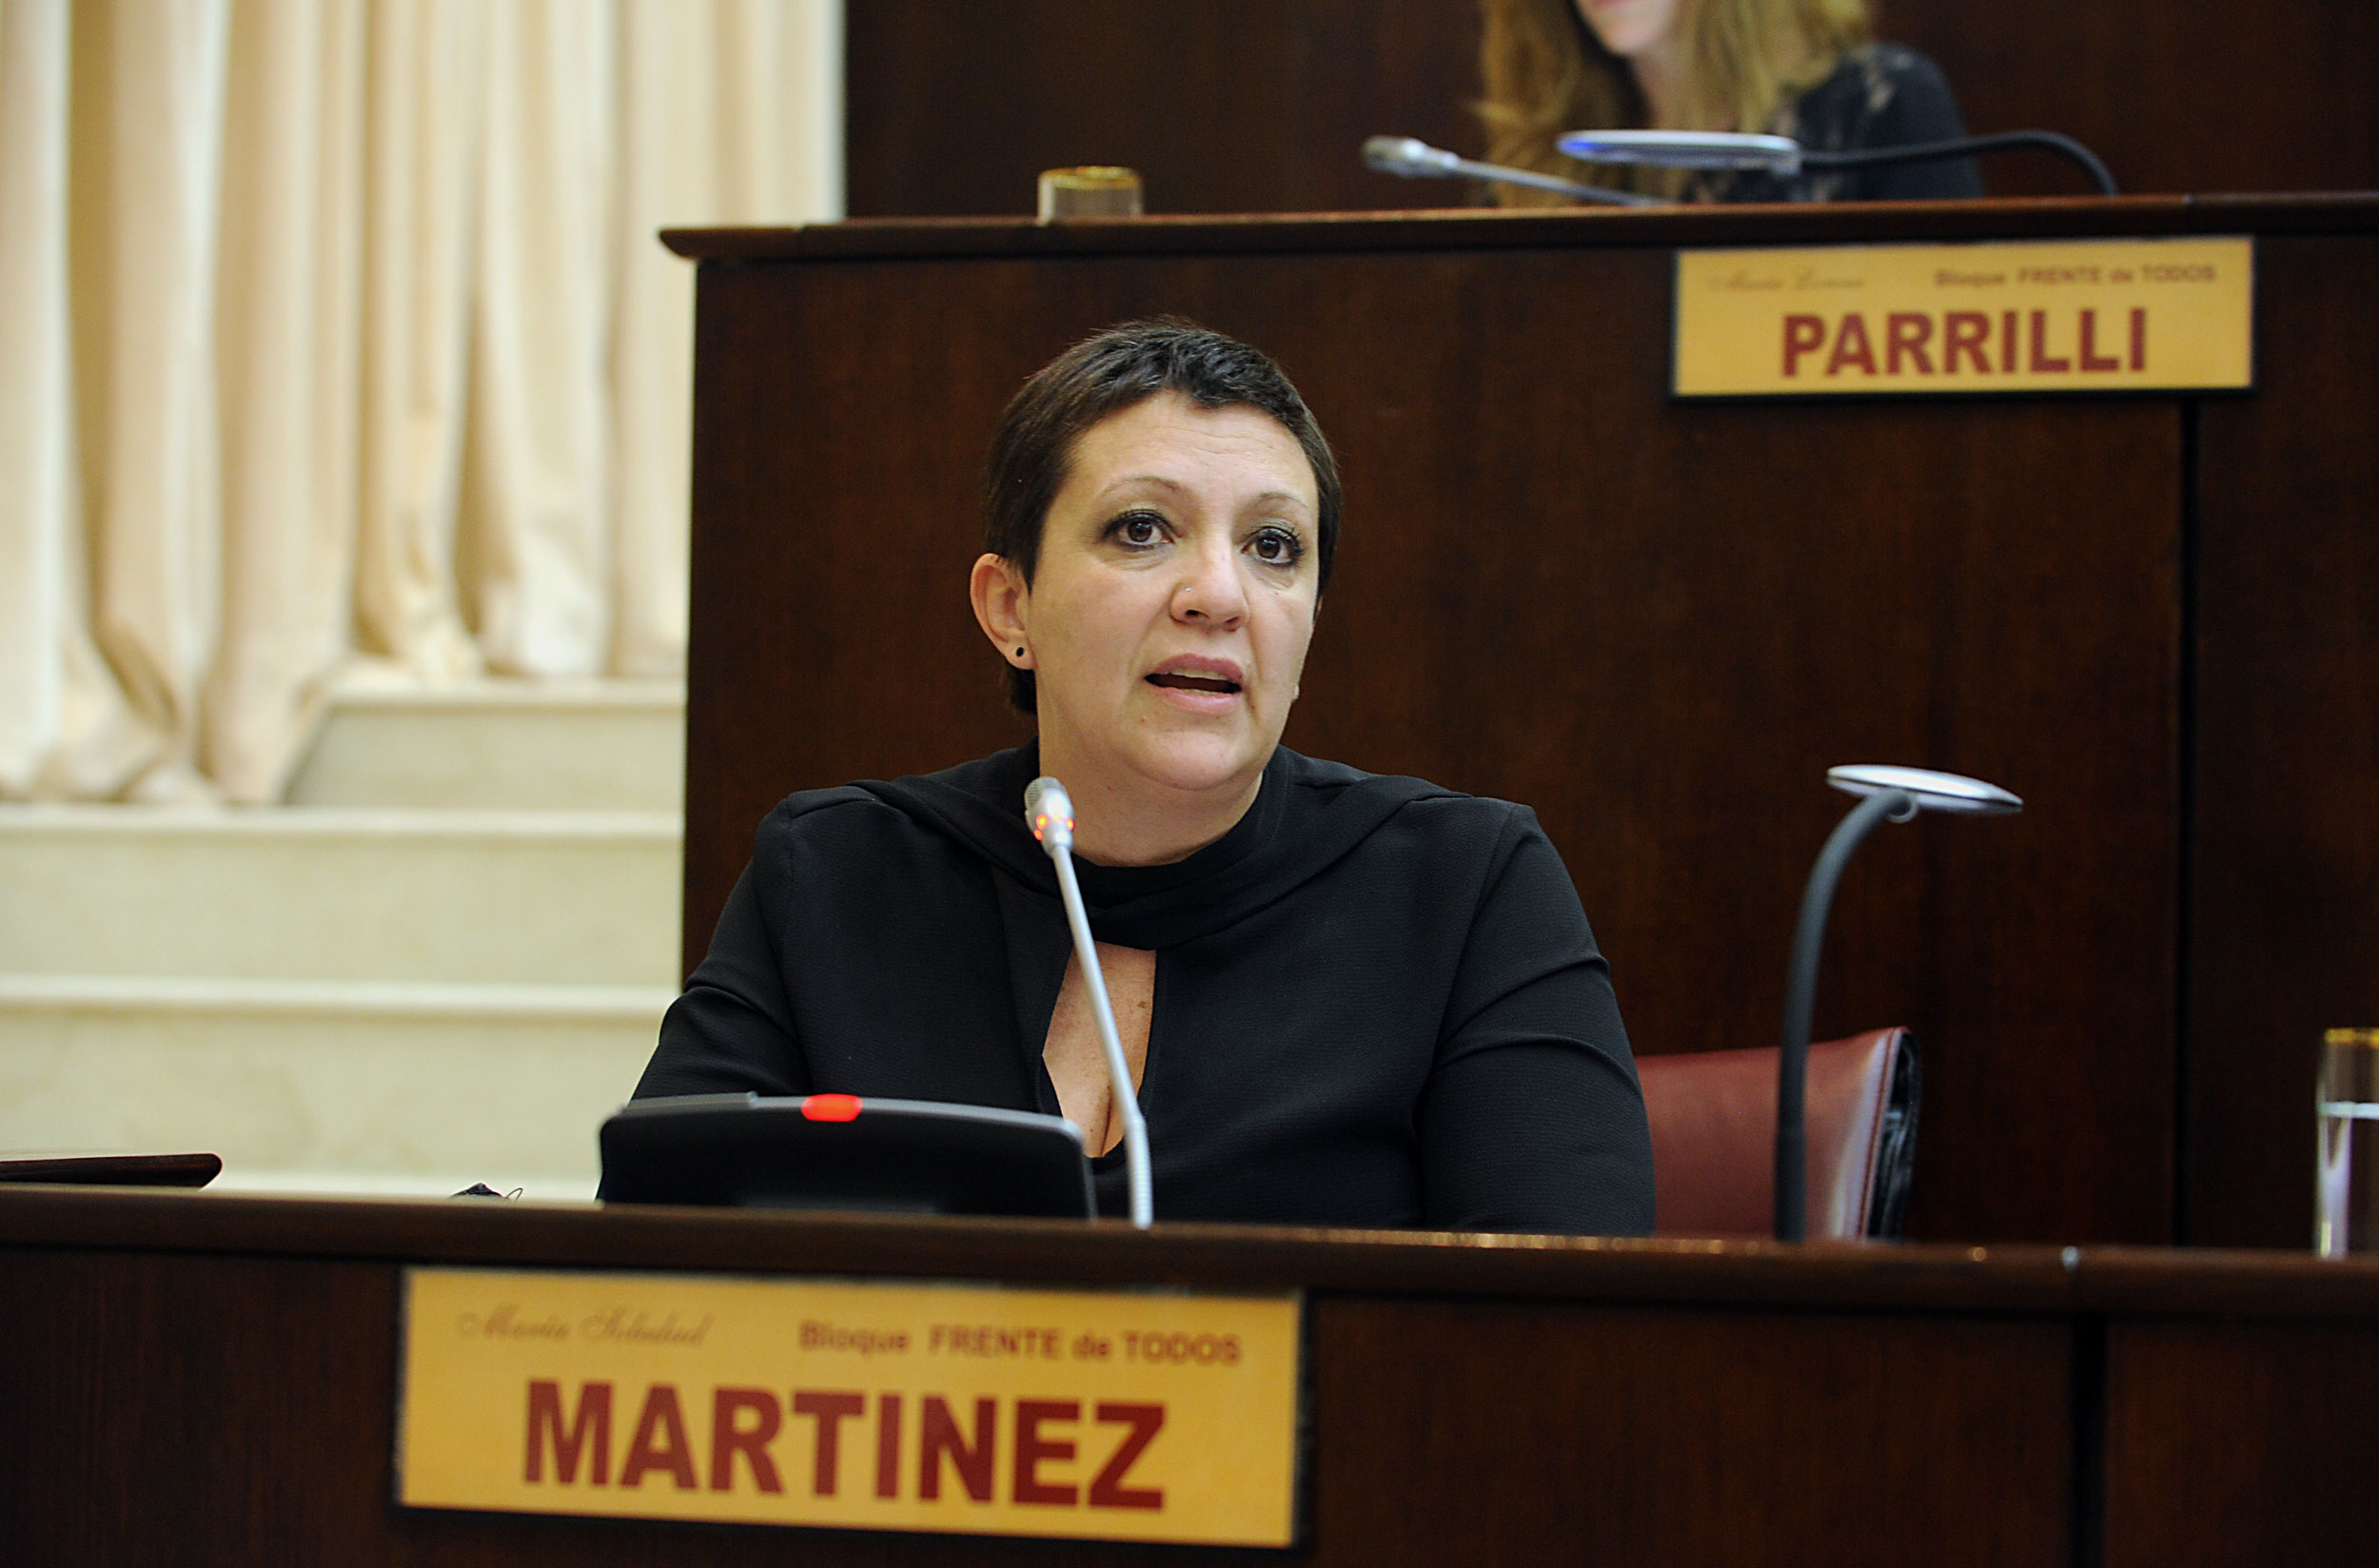 Soledad Martínez, una de las pocas que fundamentó su voto contra una candidata a jueza. (Gentileza)